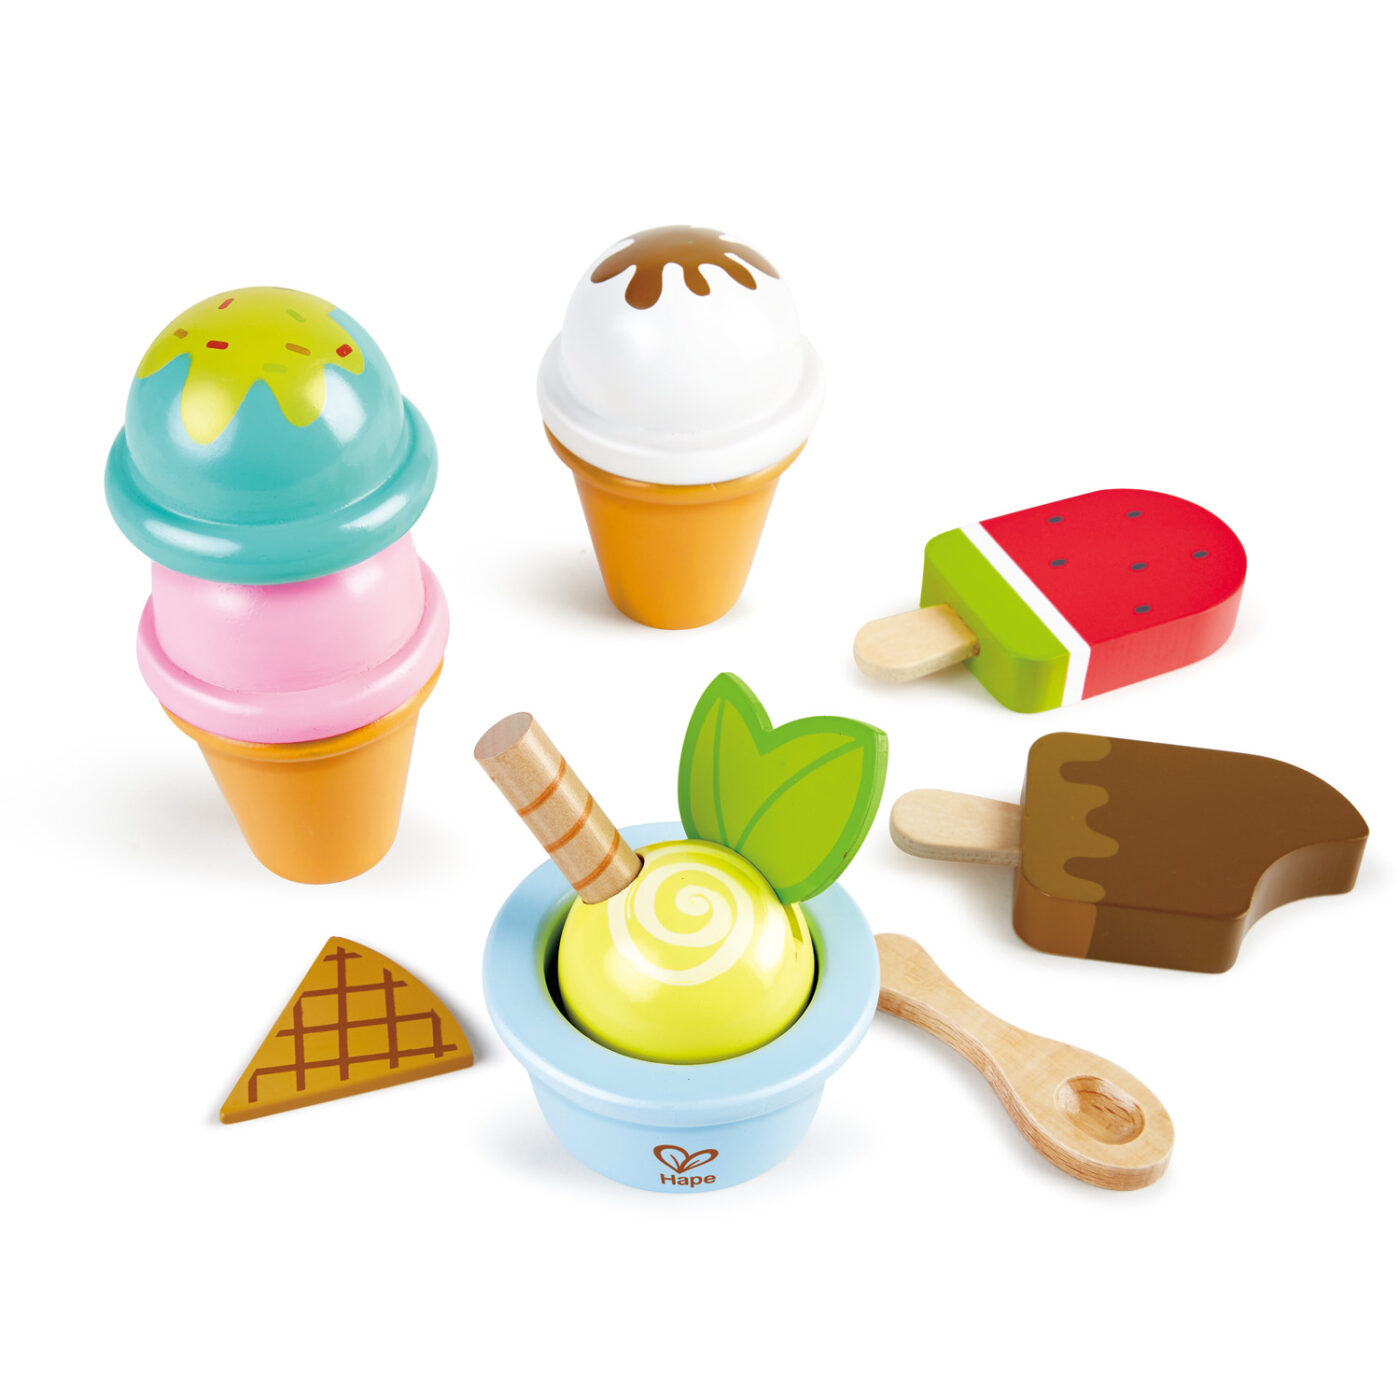 アイスクリームセットの商品画像2